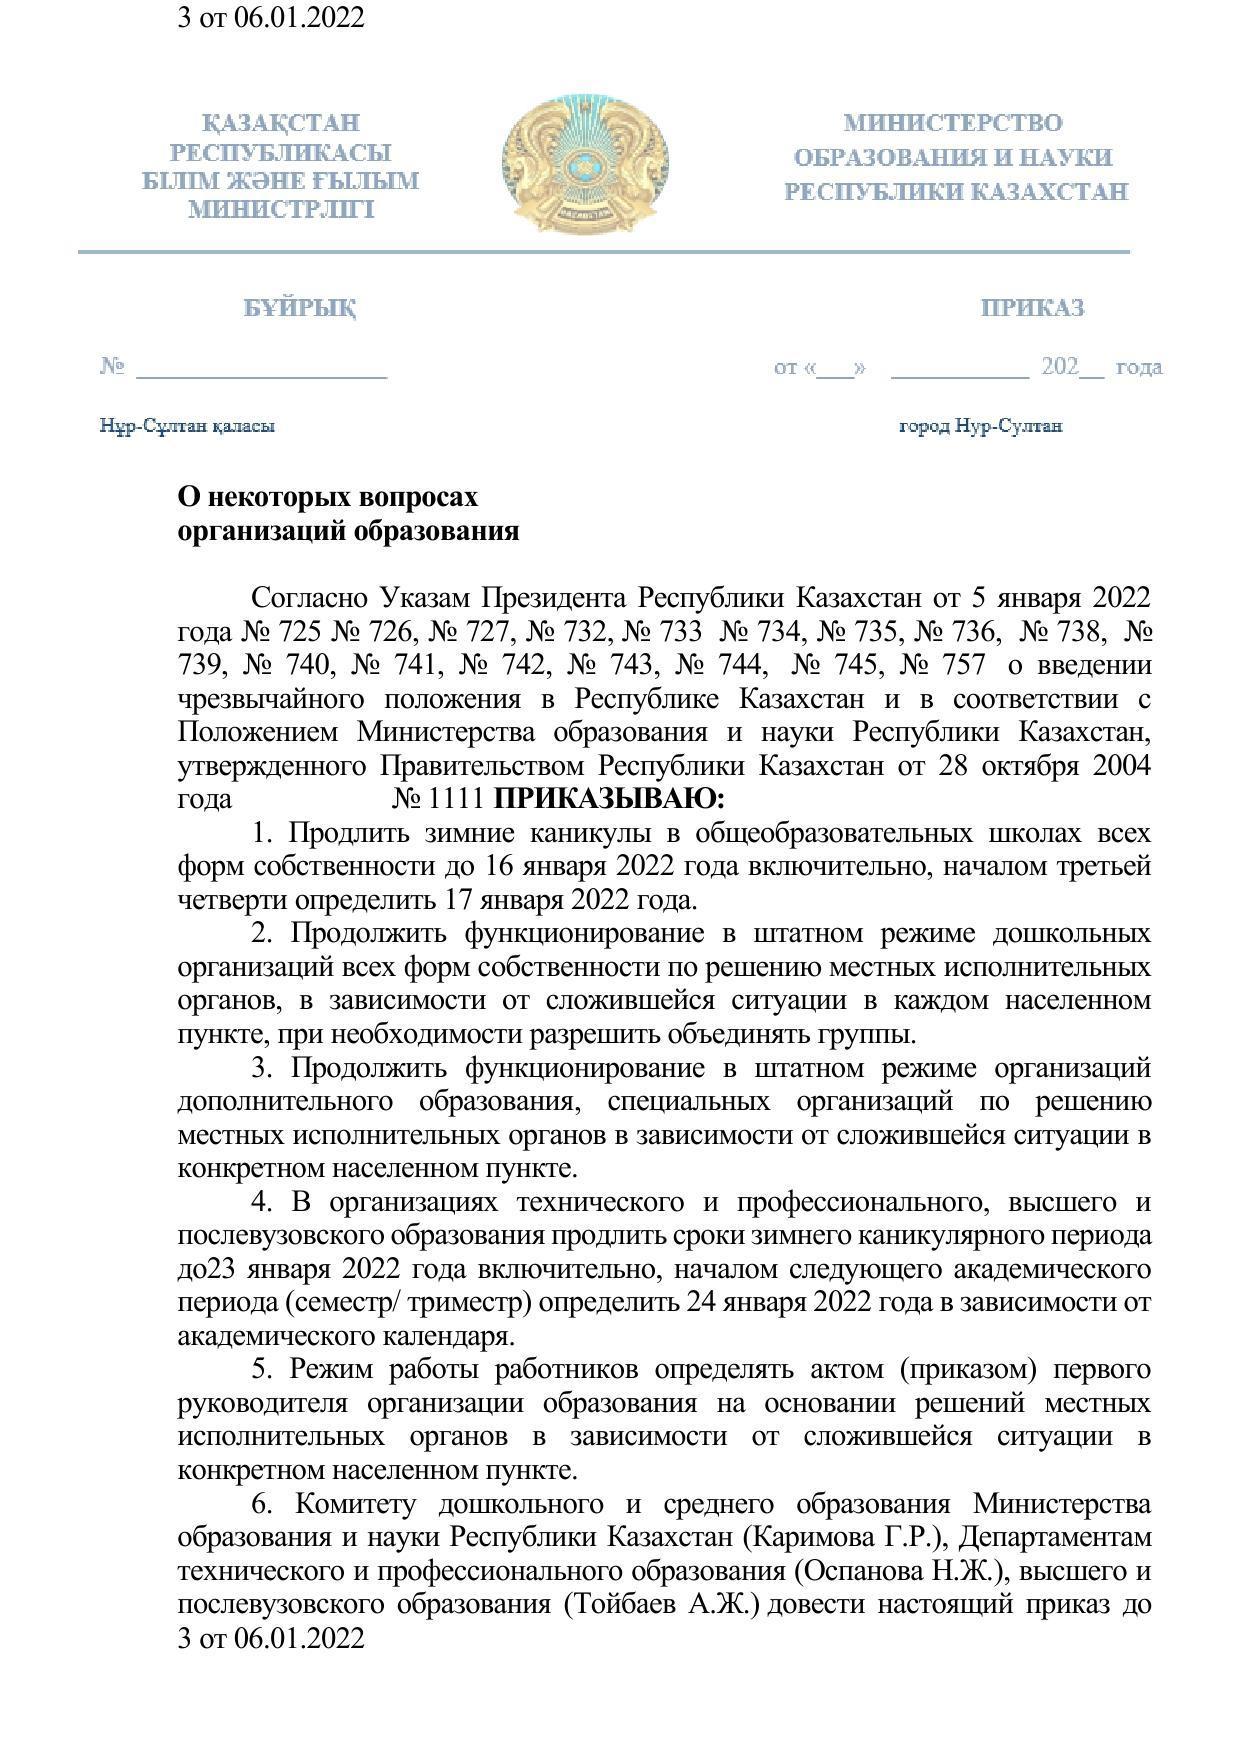 Приказ №1111 "о введении чрезвычайного положения в Руспублике Казахстан"